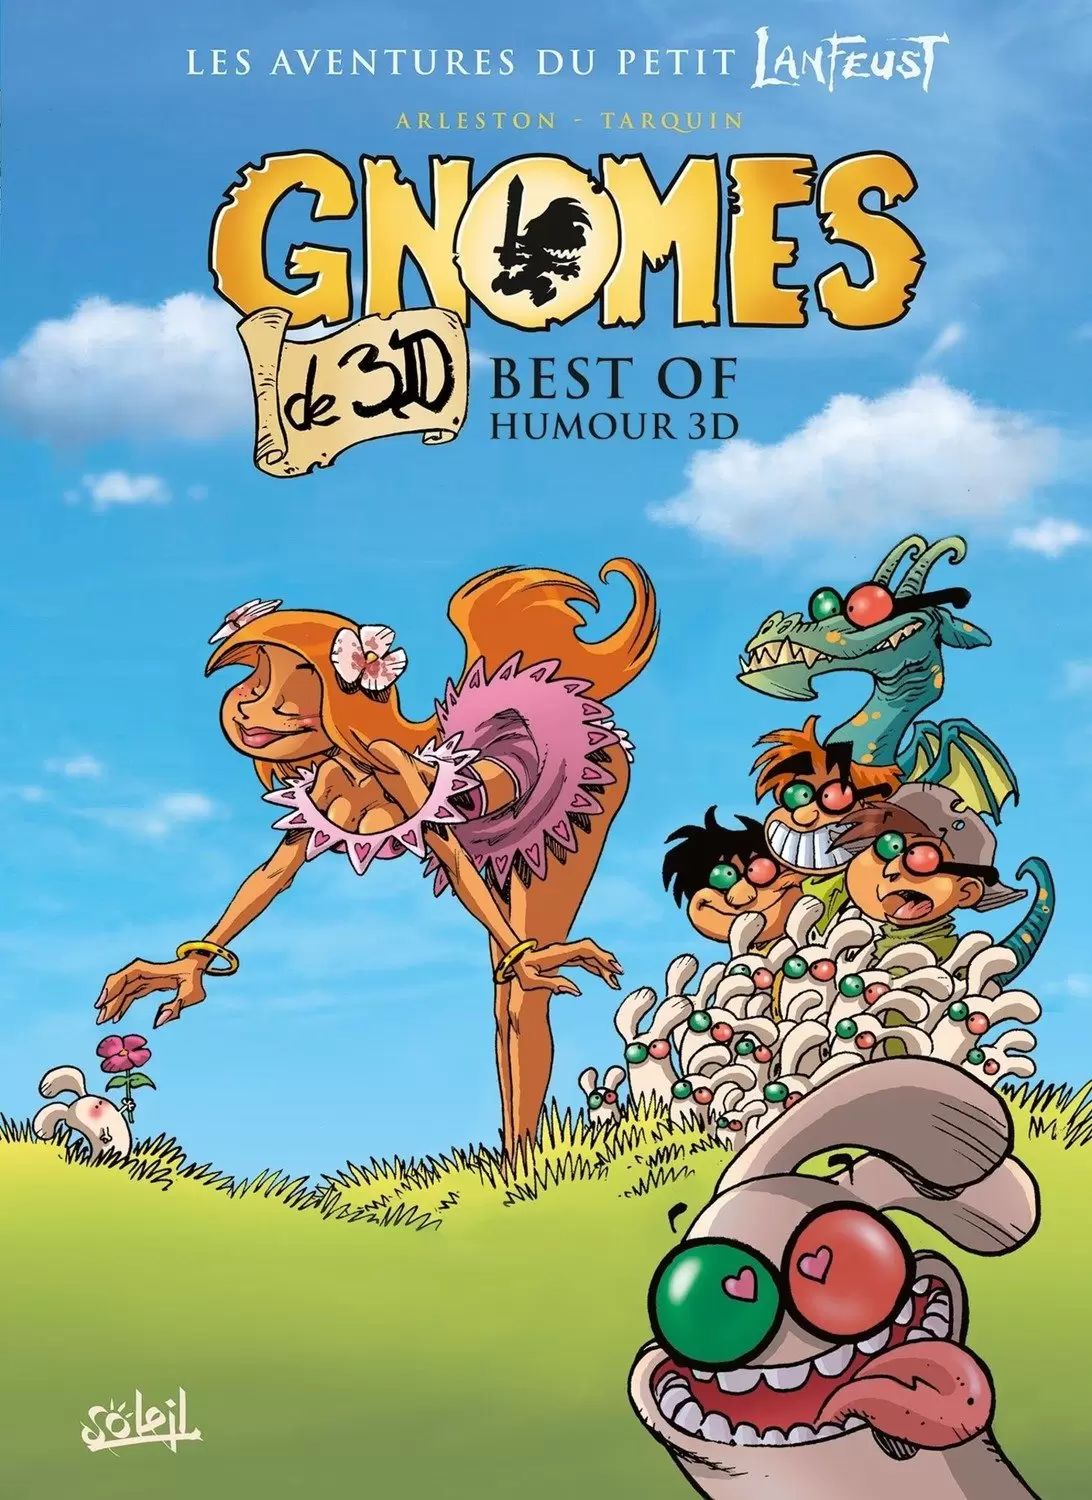 Gnomes de Troy - Best of humour 3D